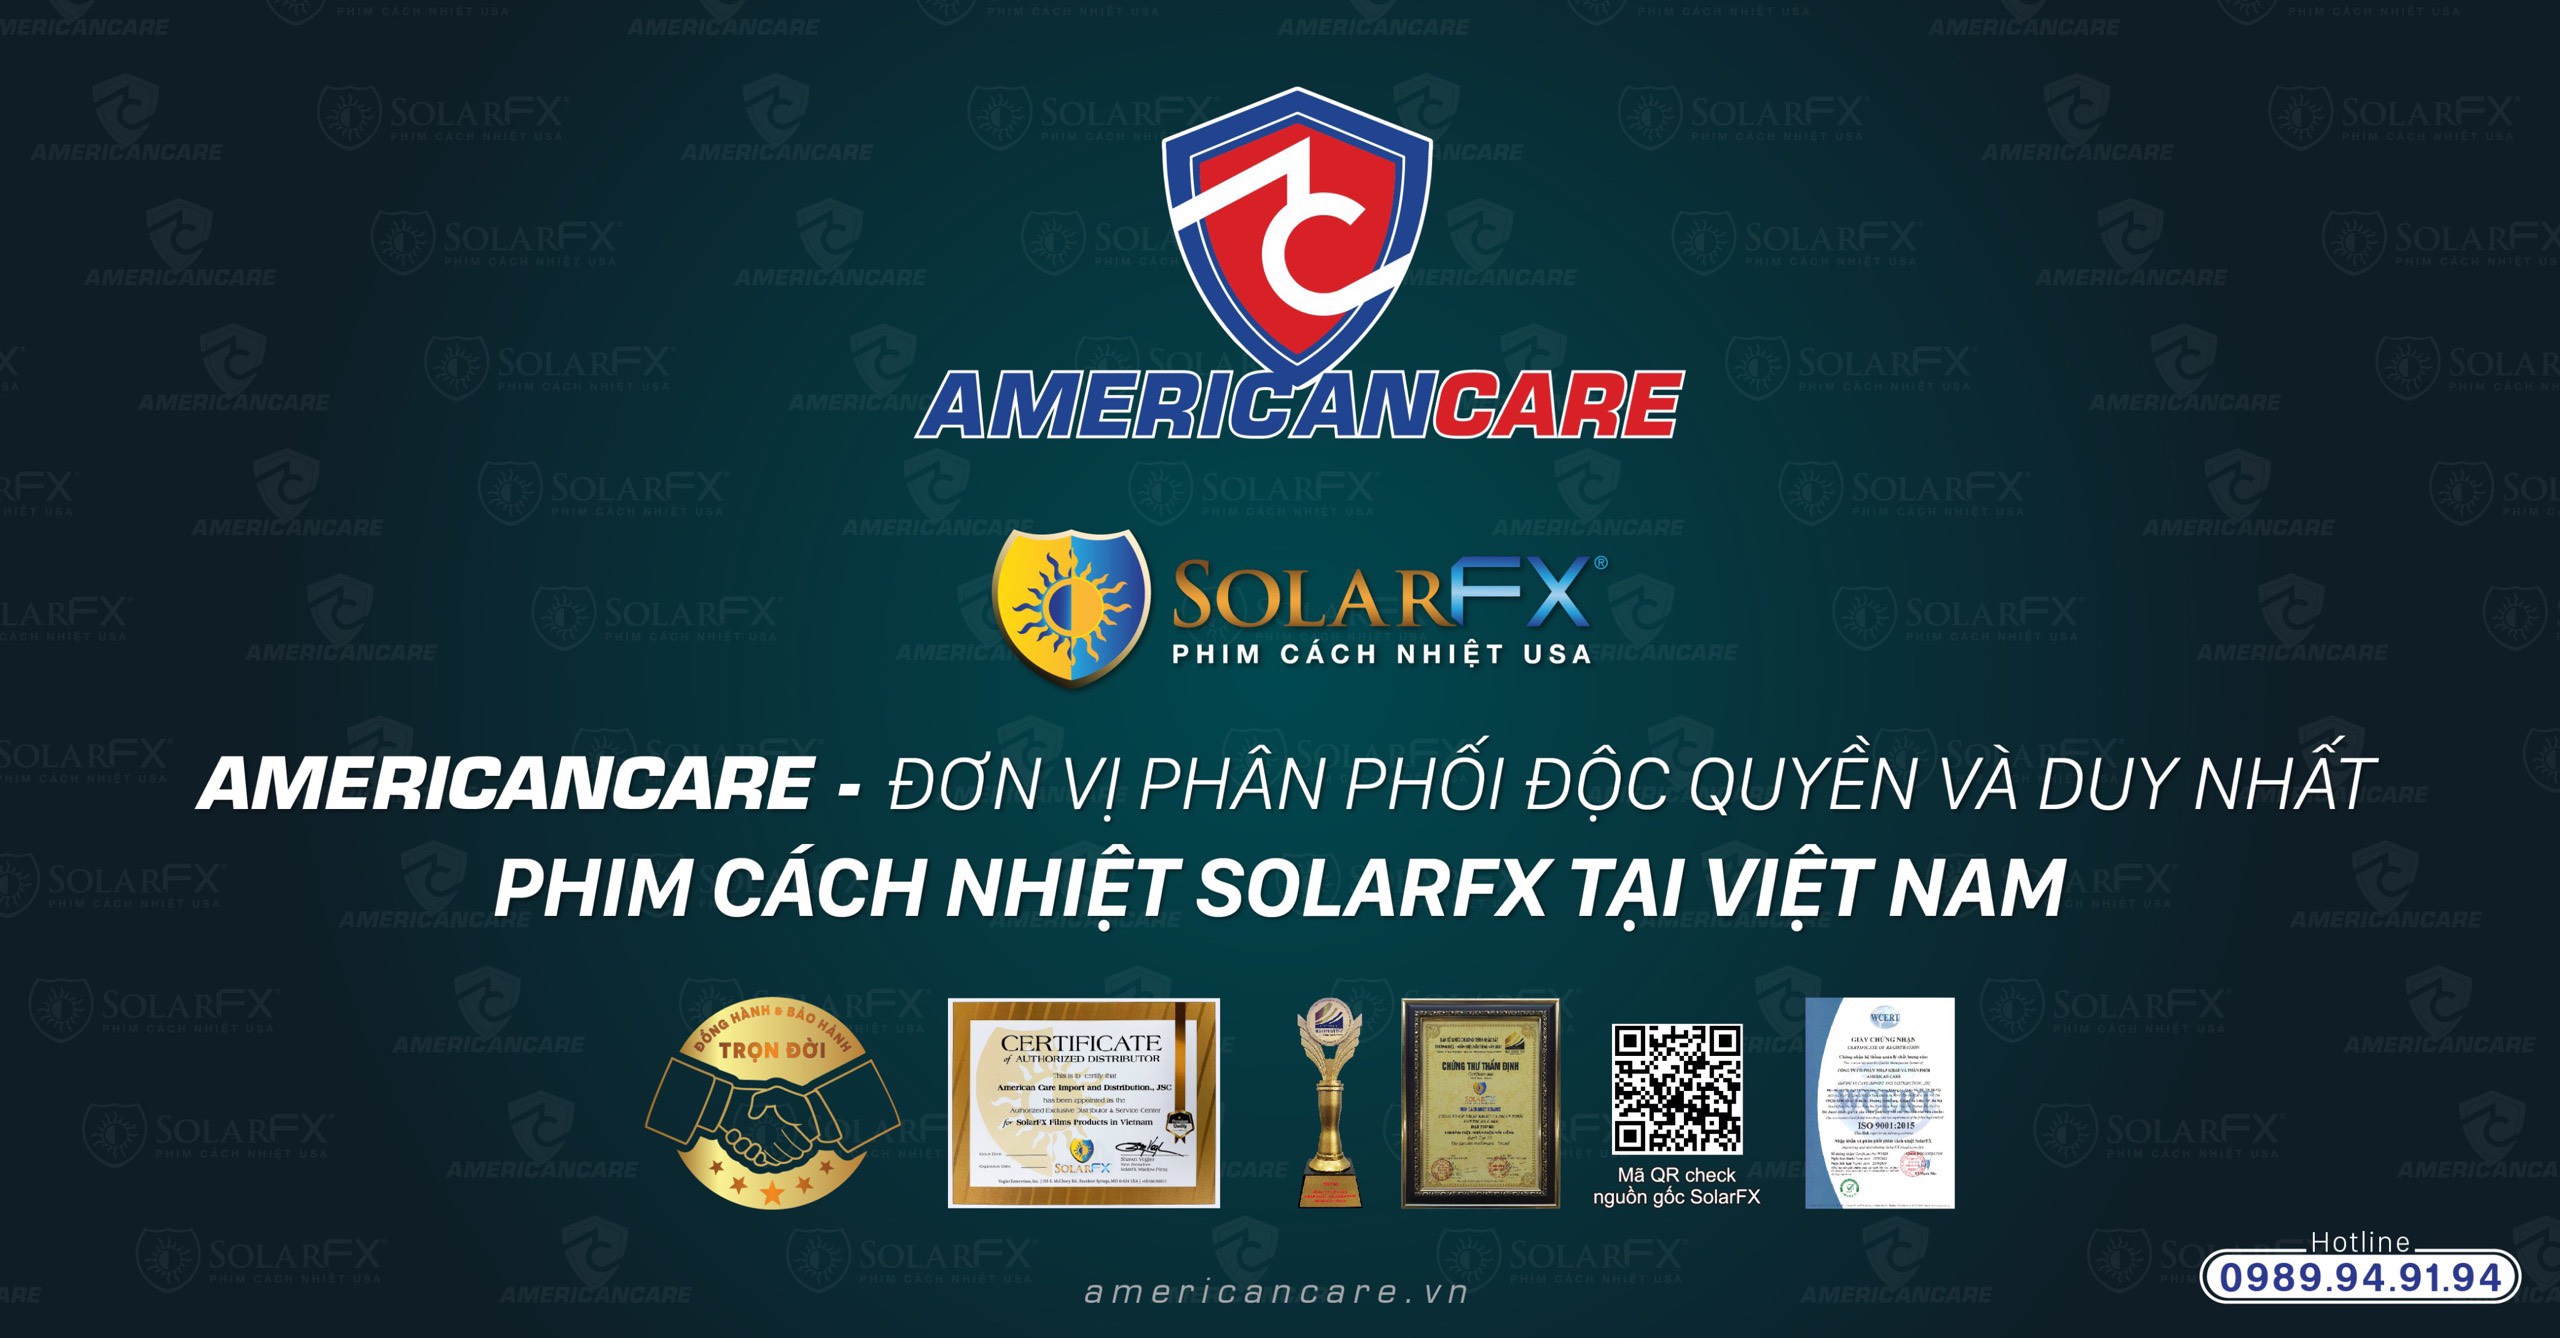 AmericanCare là công ty Cổ phần phân phối độc quyền và duy nhất hãng phim cách nhiệt SolarFX